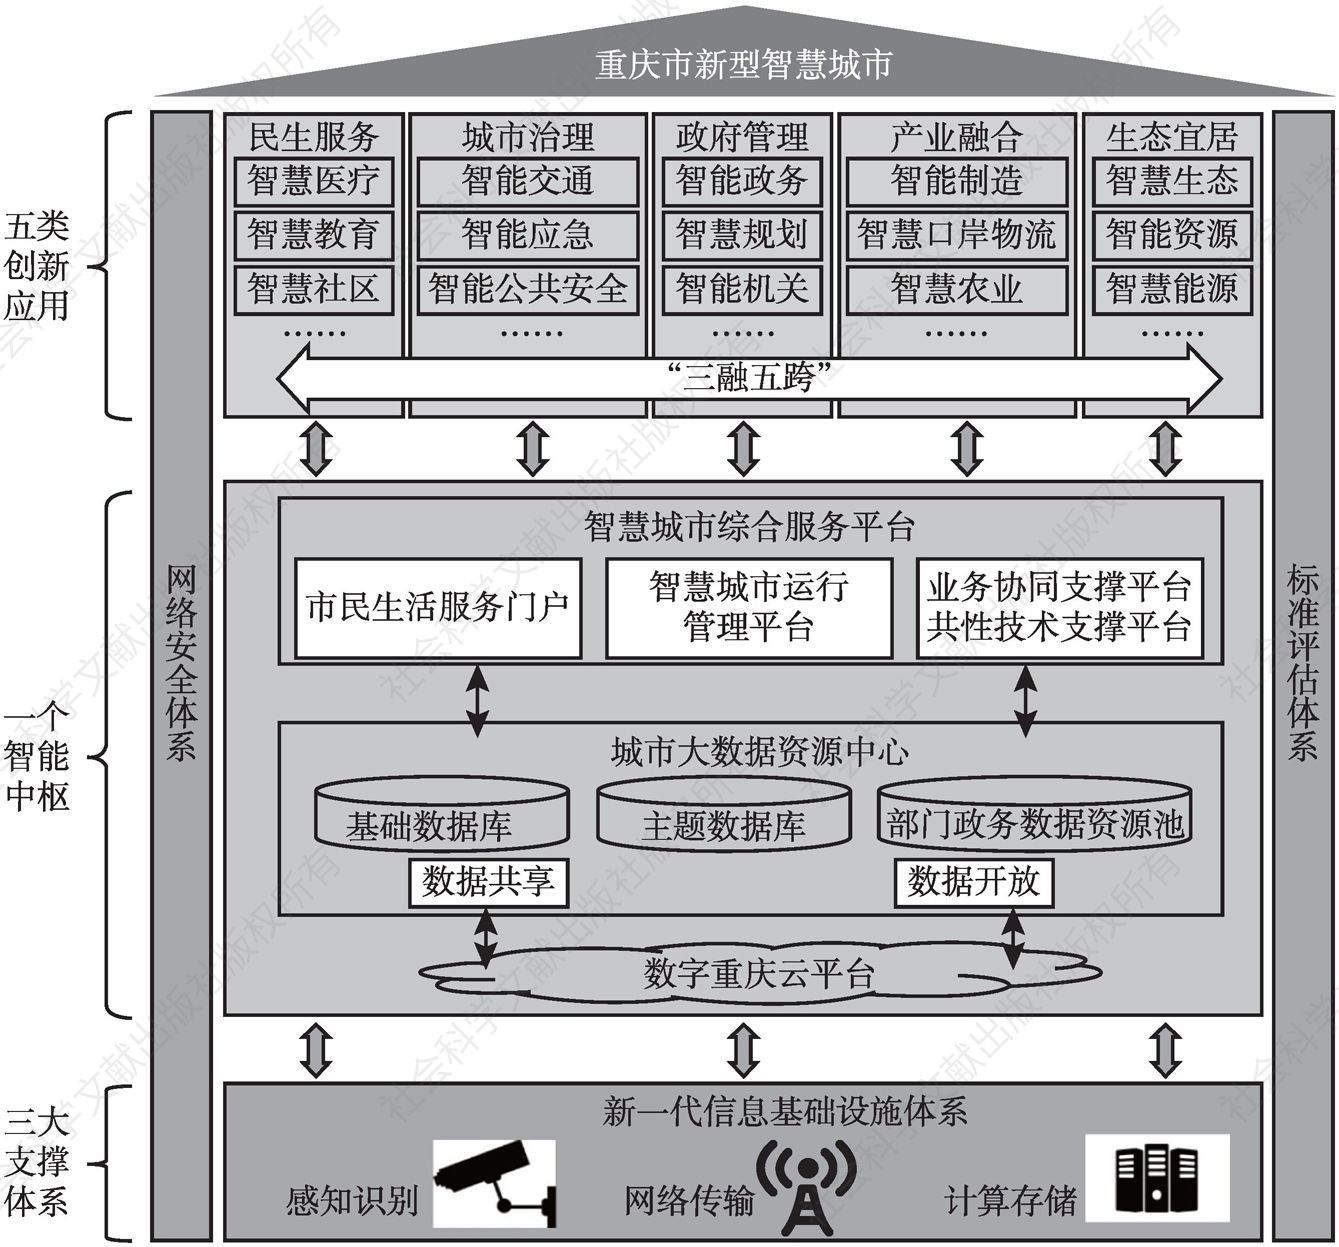 图13 重庆市新型智慧城市总体架构示意